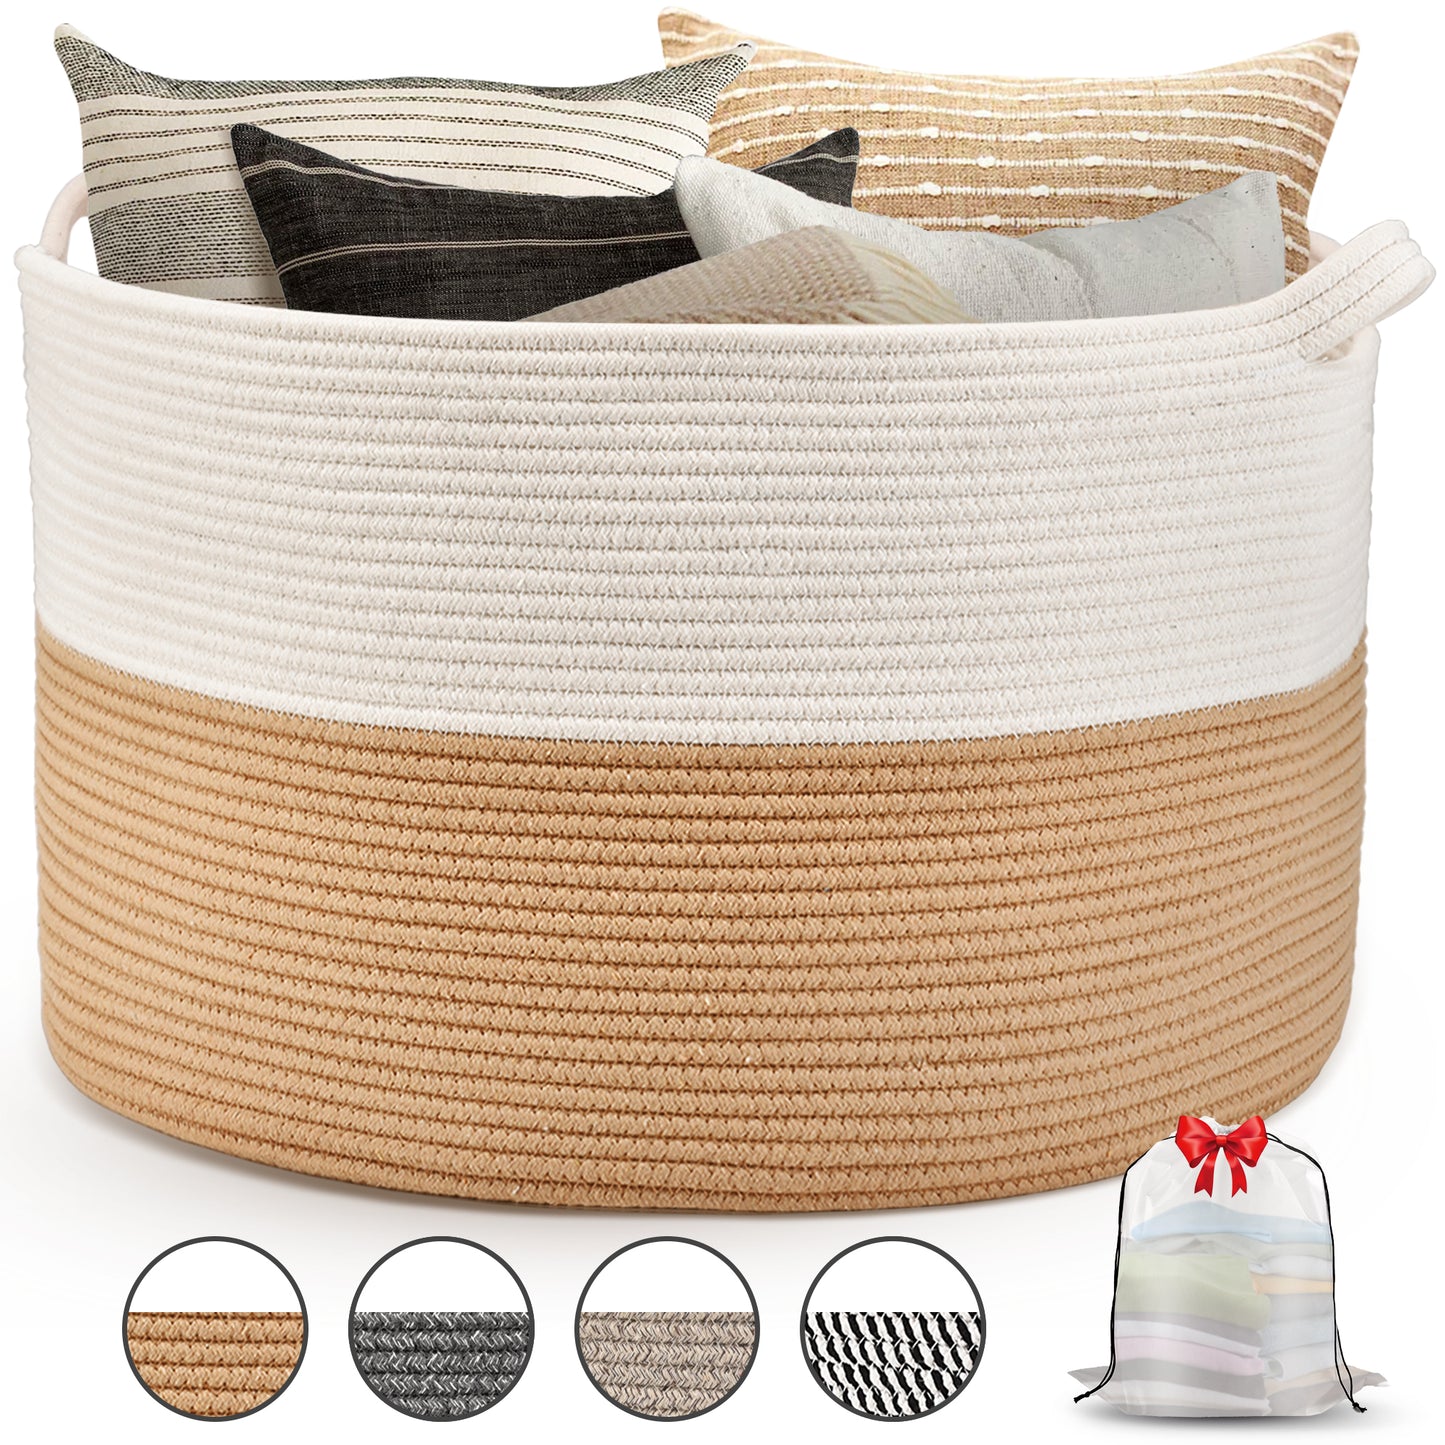 AOSION Blanket Basket, Rope Basket for Bathroom Bedroom